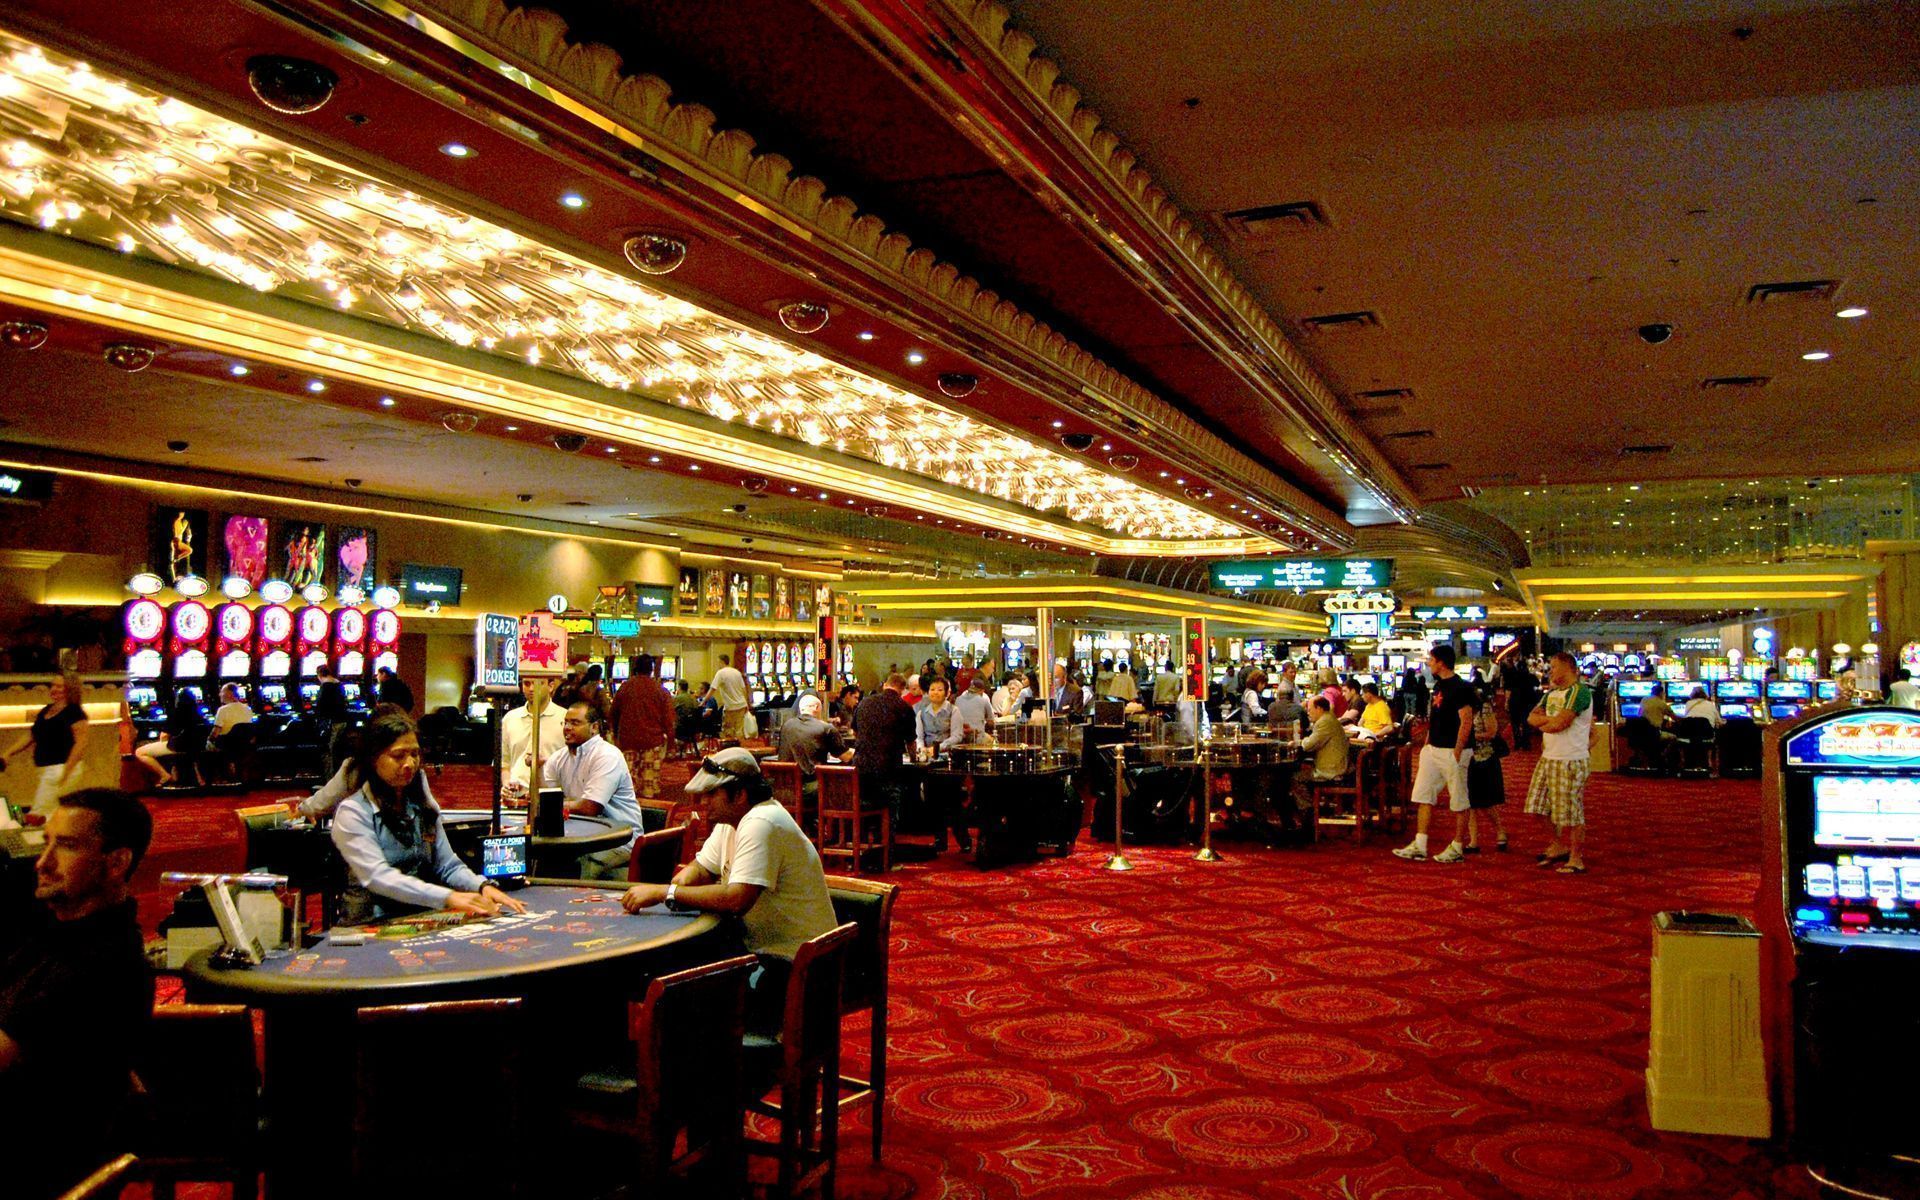 The Debate Over Online Casino